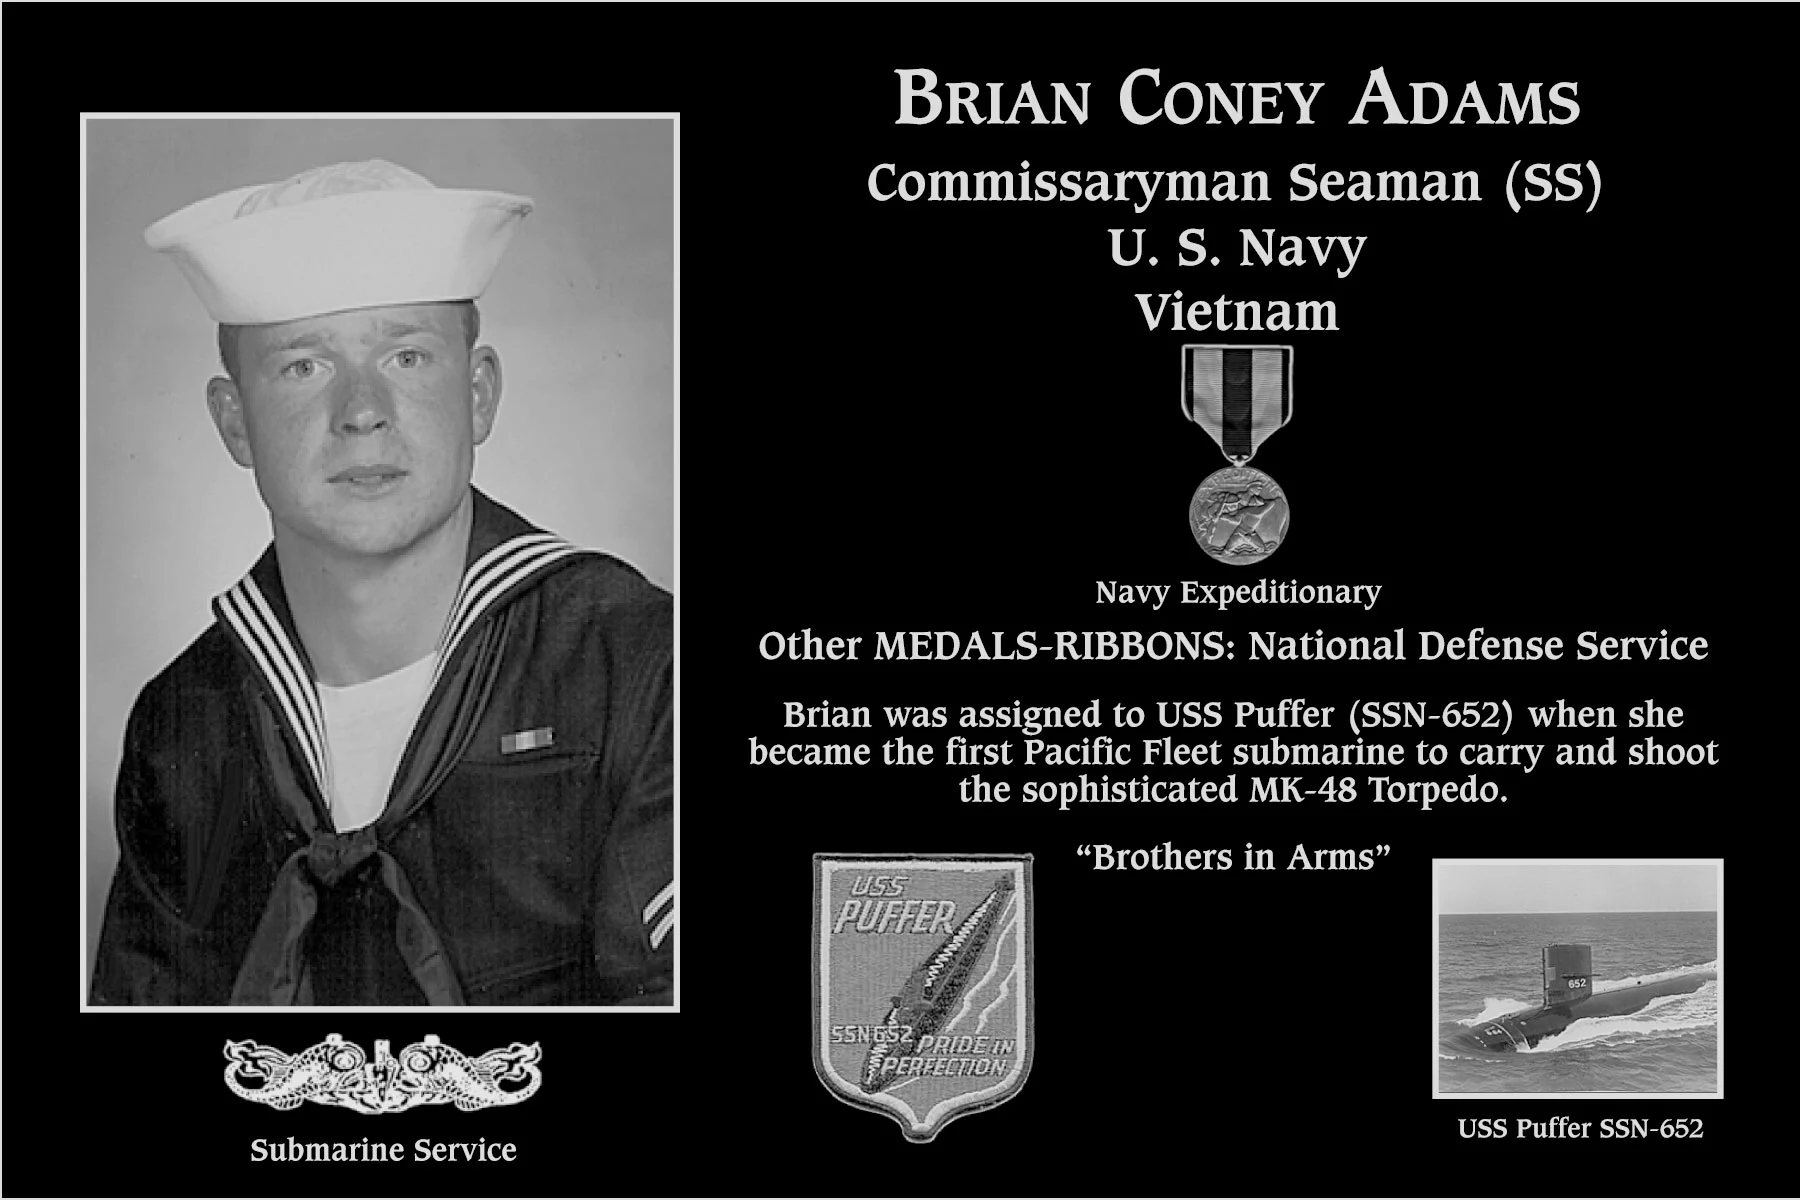 Brian Coney Adams